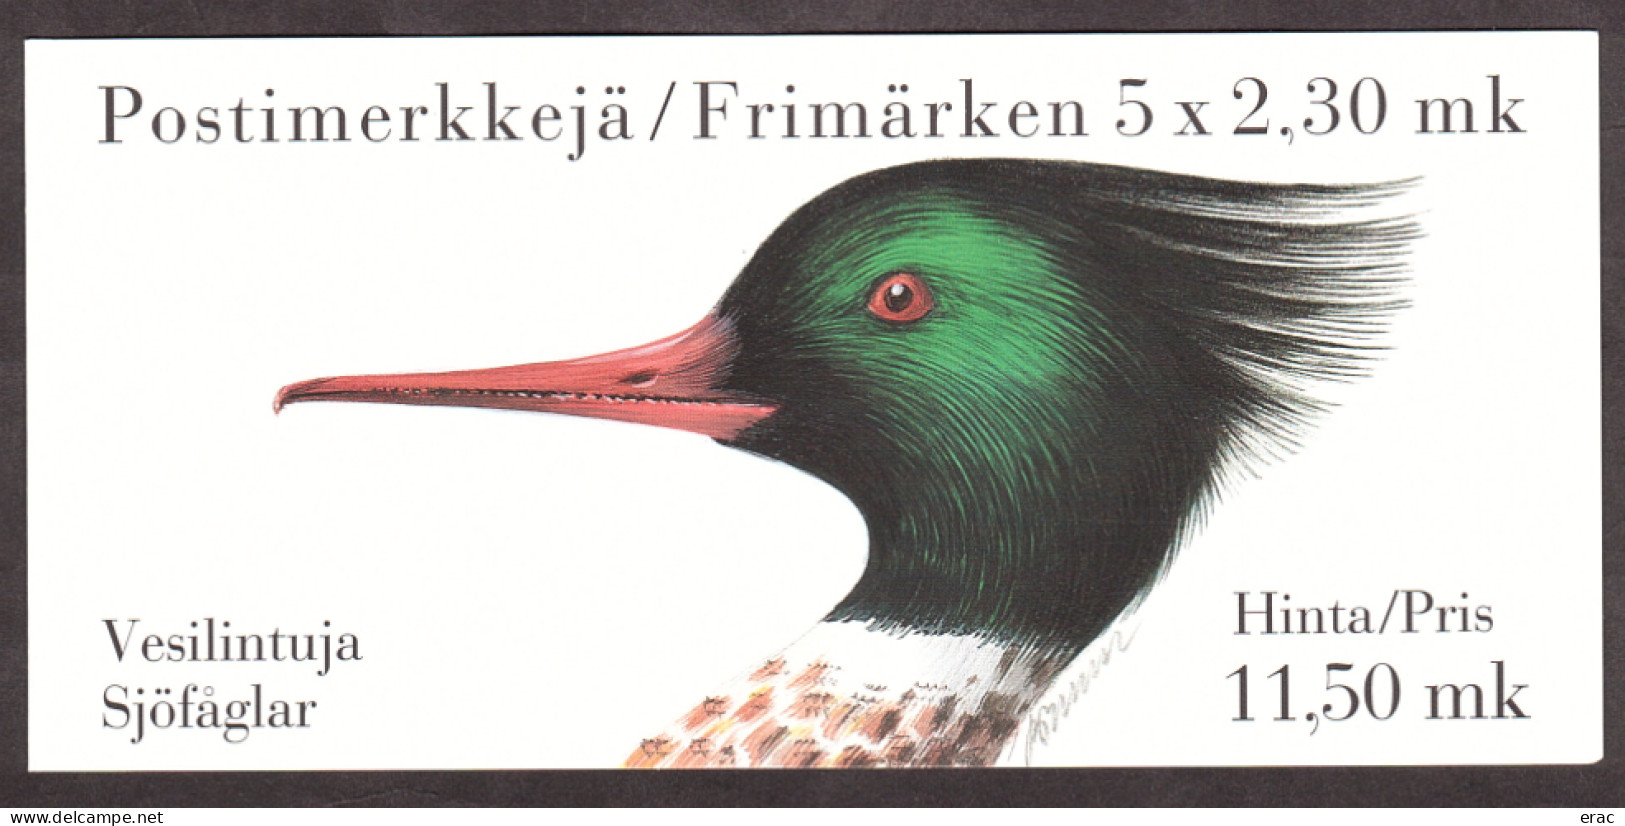 Finlande - 1993 - Carnet C1189 - Neuf ** - Oiseaux Aquatiques - Markenheftchen